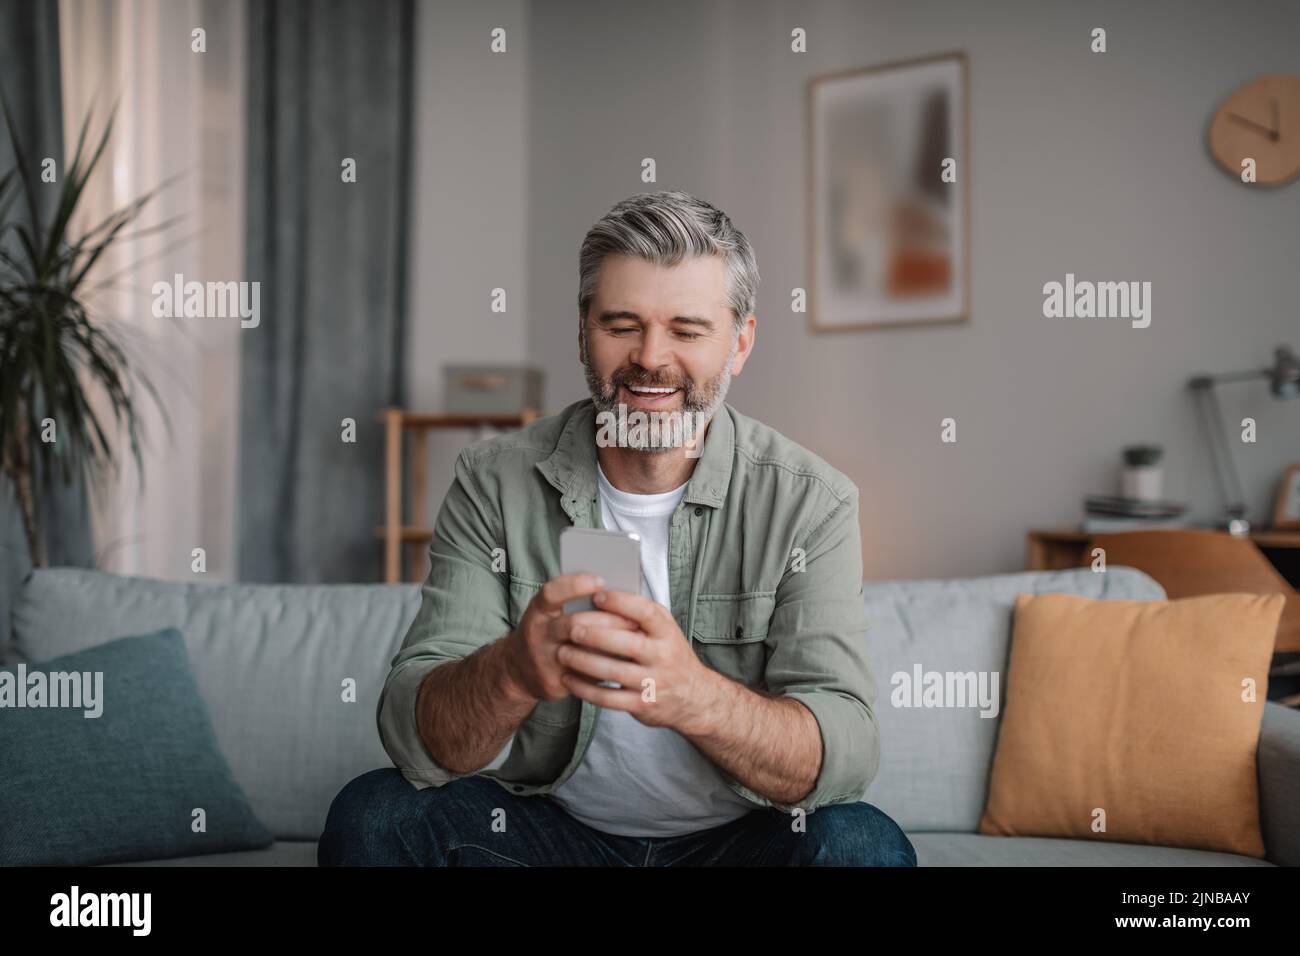 Alegre hombre europeo anciano con barba, charlando con smartphone, viendo vídeo, jugando Foto de stock